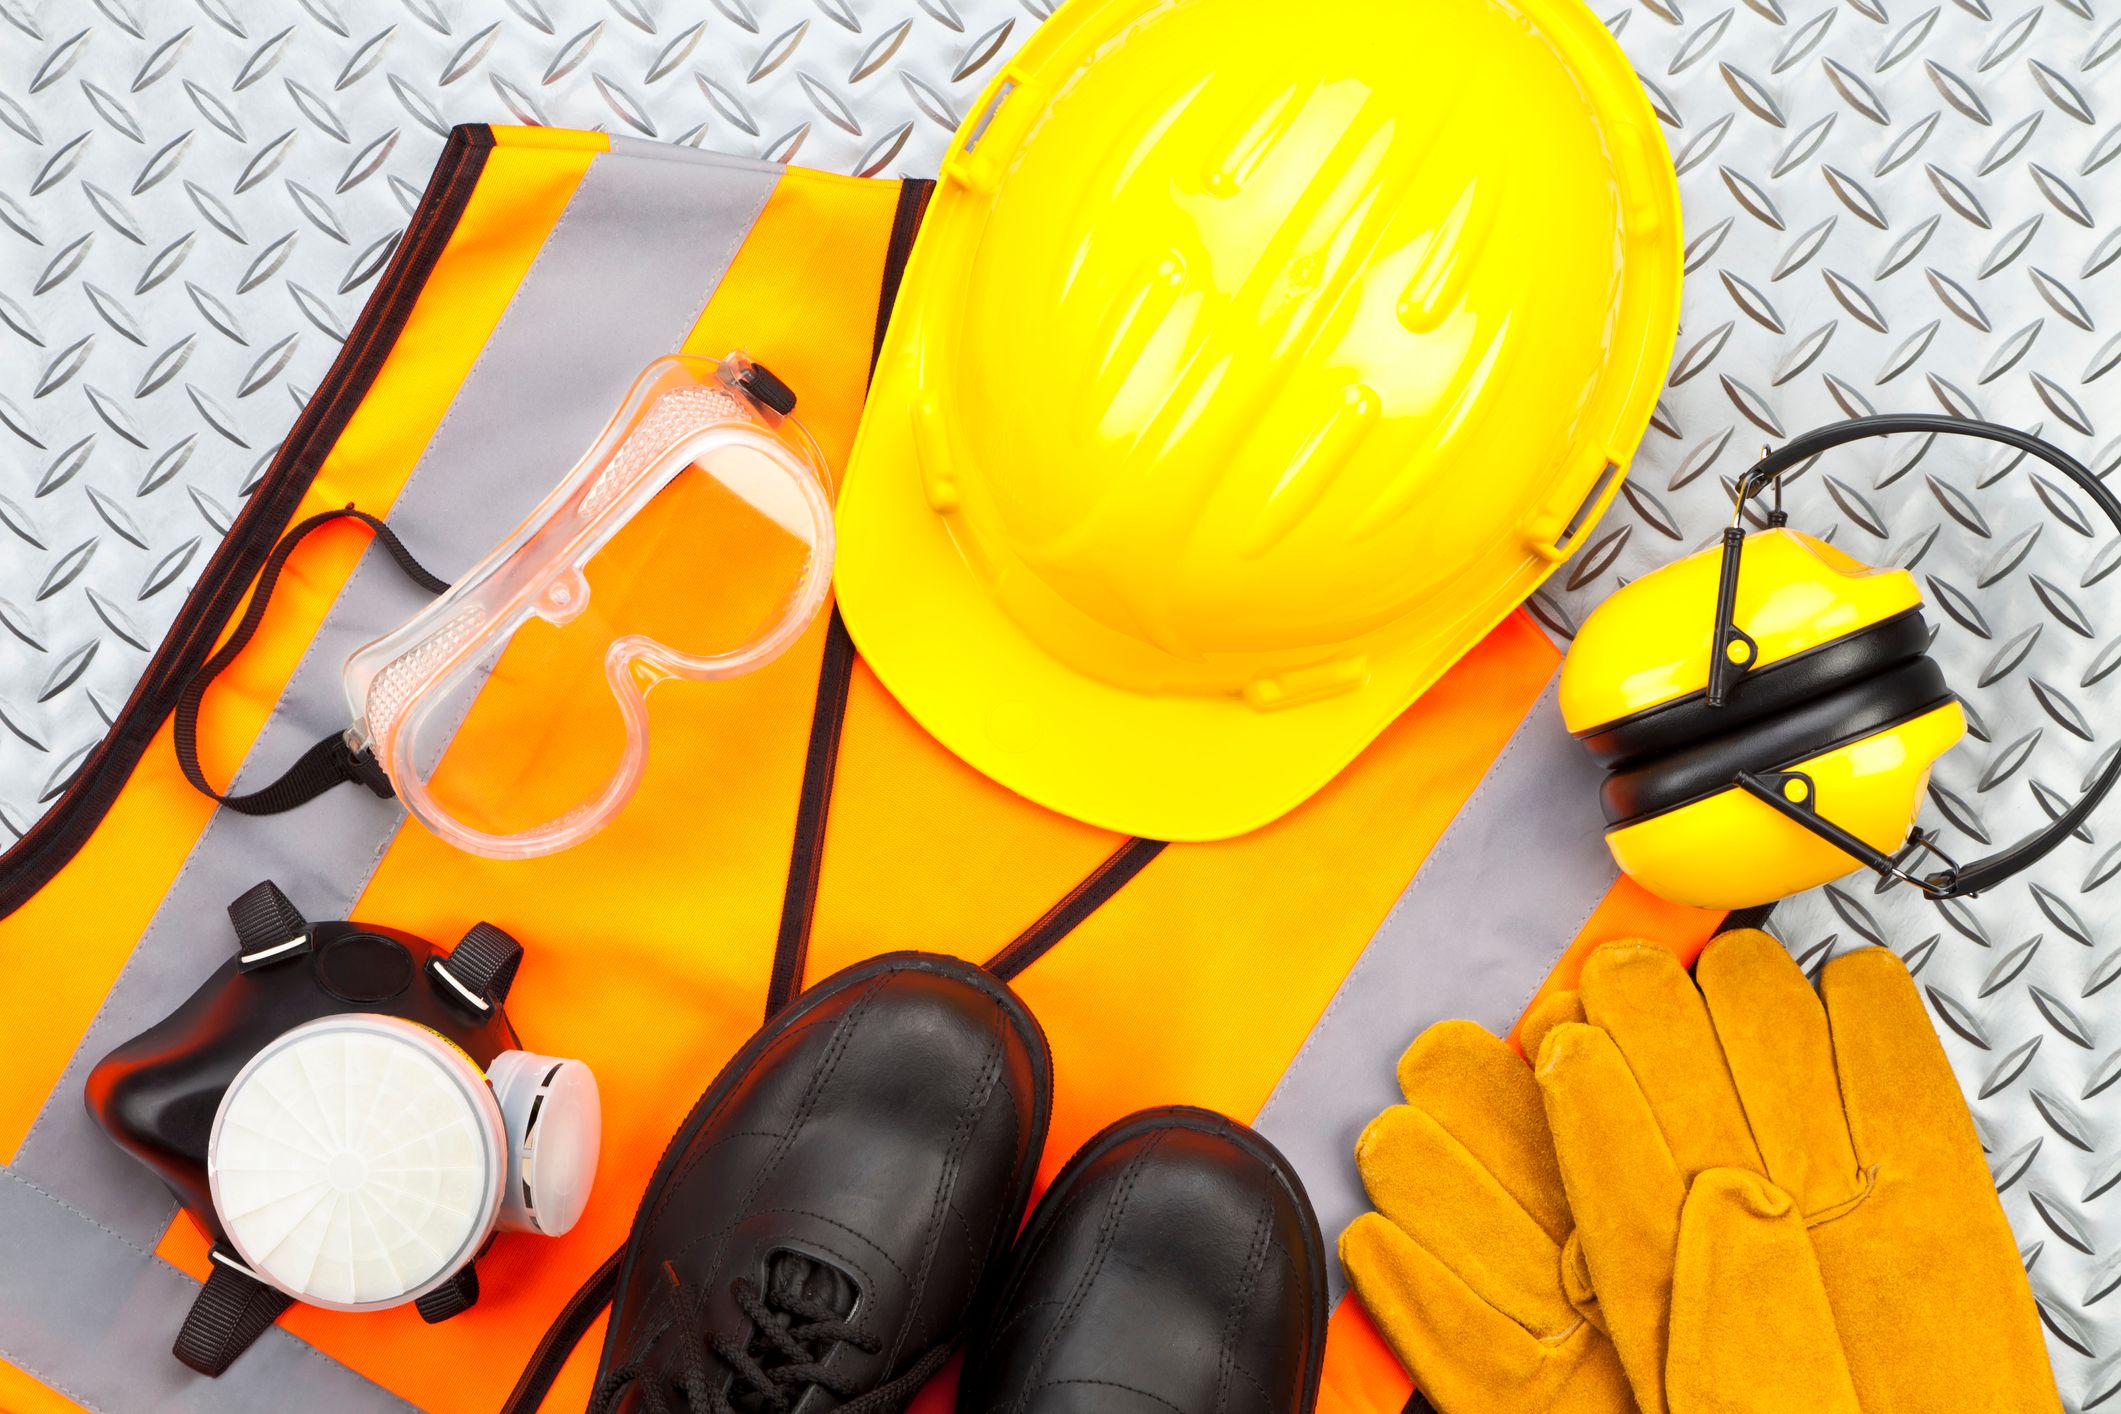 Um capacete amarelo, óculos de segurança, luvas de trabalho, botas de segurança, um colete refletivo e protetores auriculares dispostos sobre uma superfície texturizada.